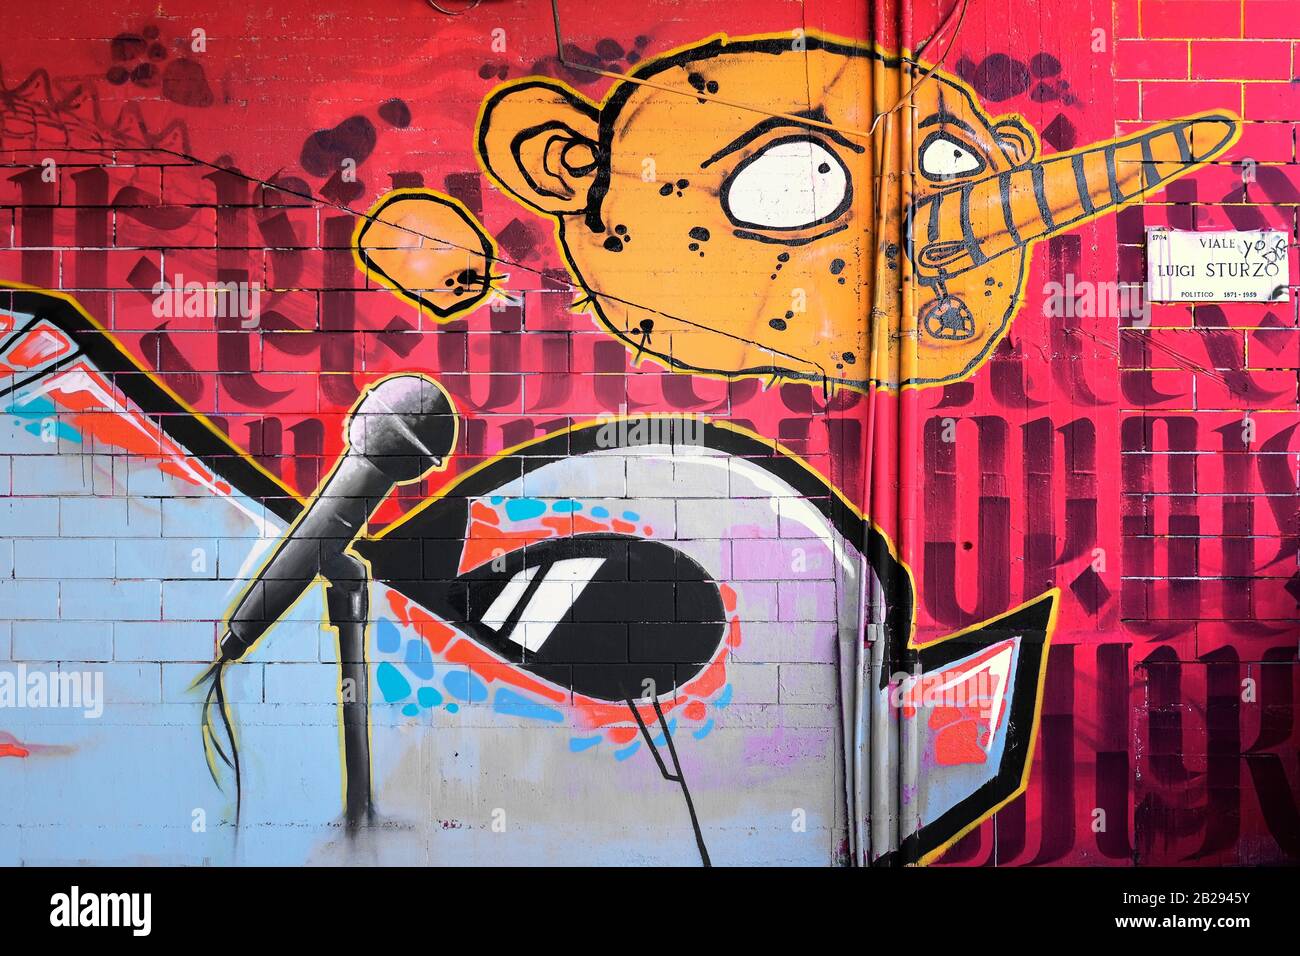 Graffitis moderne Dans La Via Sturzo, Milan, Italie, représentant la caricature d'un visage humain avec un grand nez et un étranger avec un microphone de stand Banque D'Images